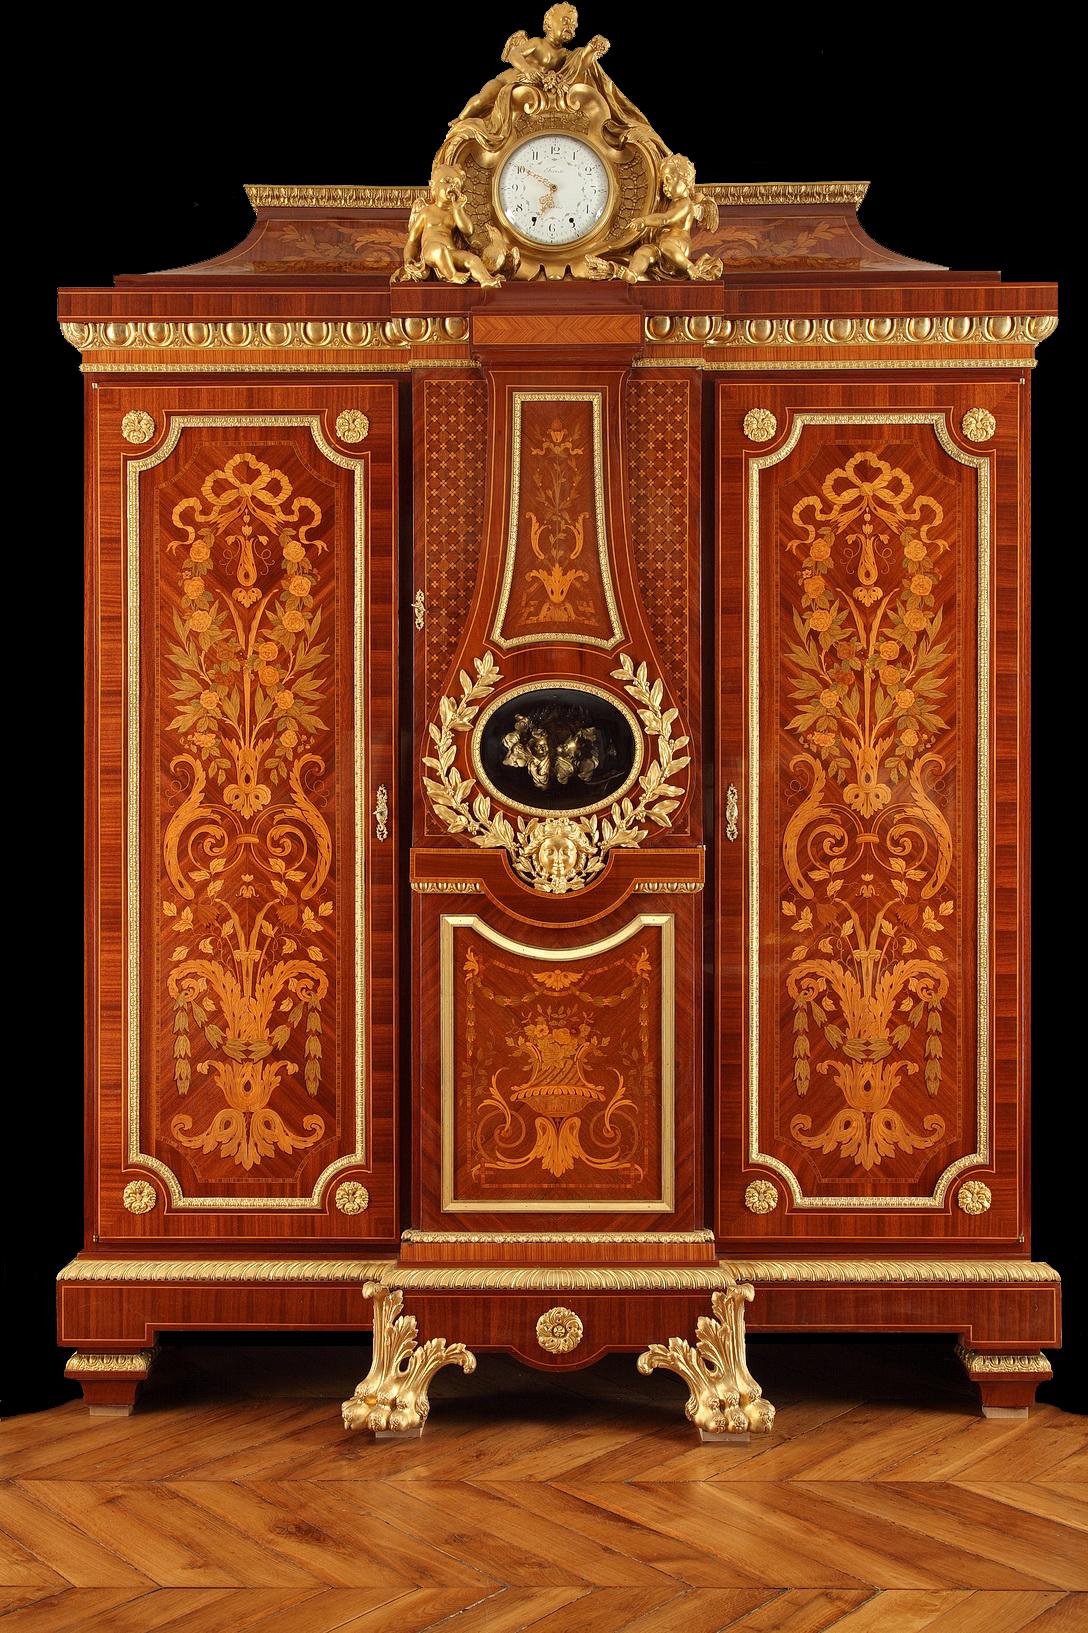 Signé Forest à Paris

Une rare armoire de style Louis XIV avec un fronton en ogee. S'ouvrant sur deux armoires latérales flanquées d'une horloge à régulateur, richement décorée de marqueterie ornée de roses, de couronnes de laurier, d'acanthes et